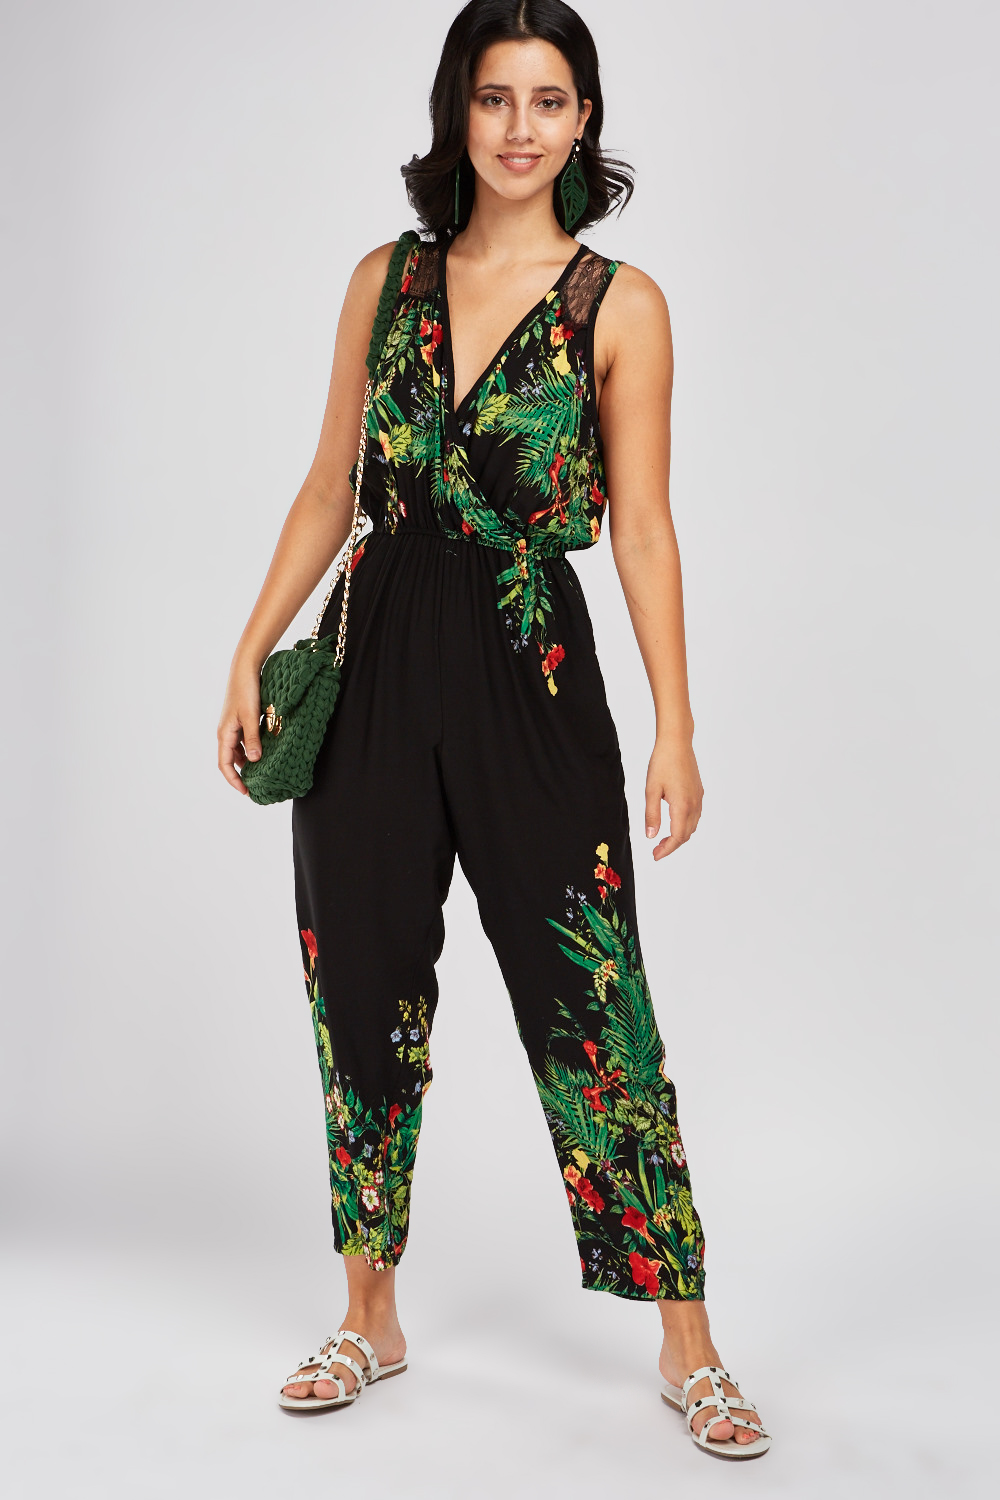 Tropical Print Lace Trim Jumpsuit - Just $7